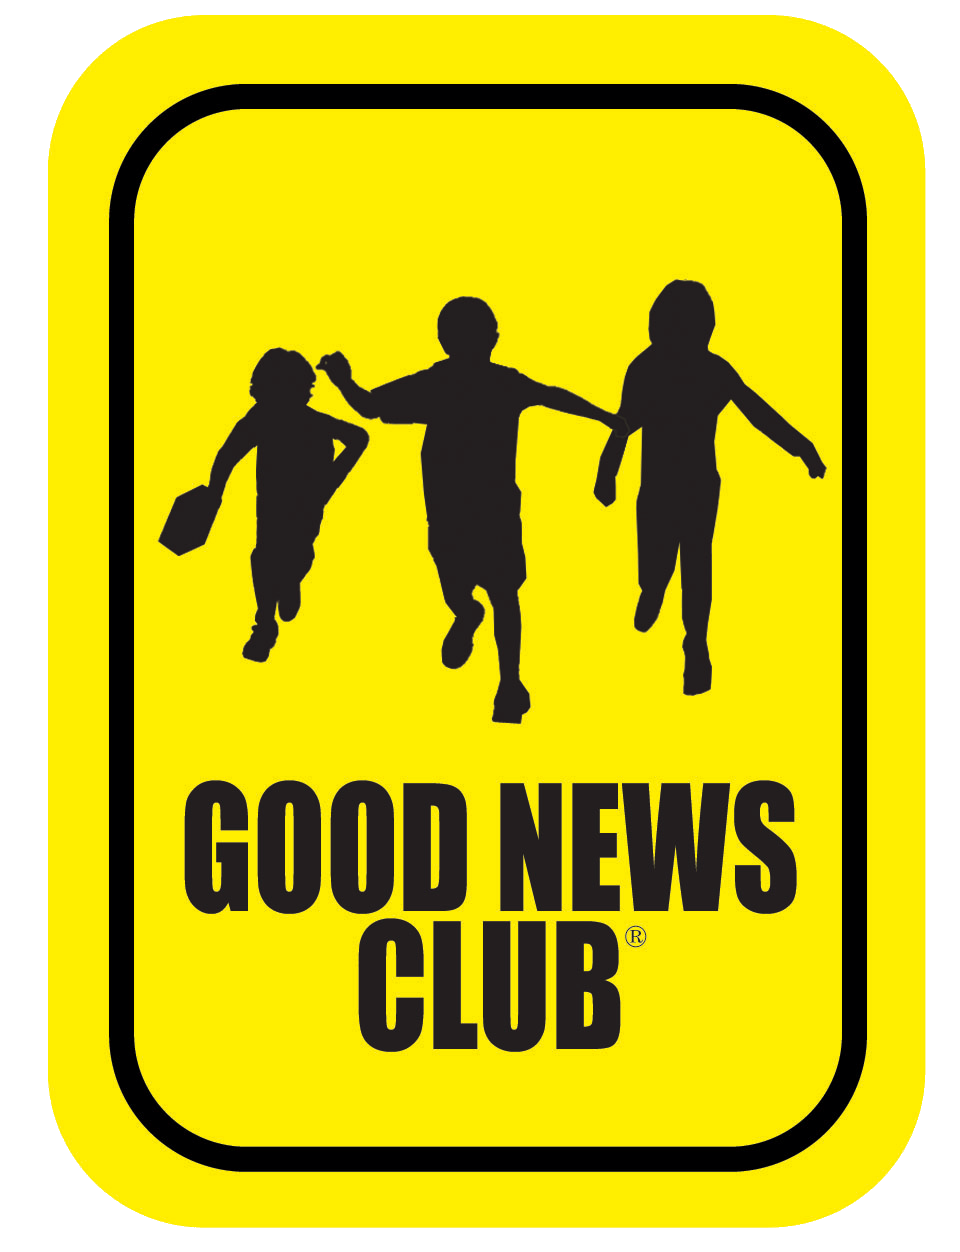 Boa notícia clube PNG clipart